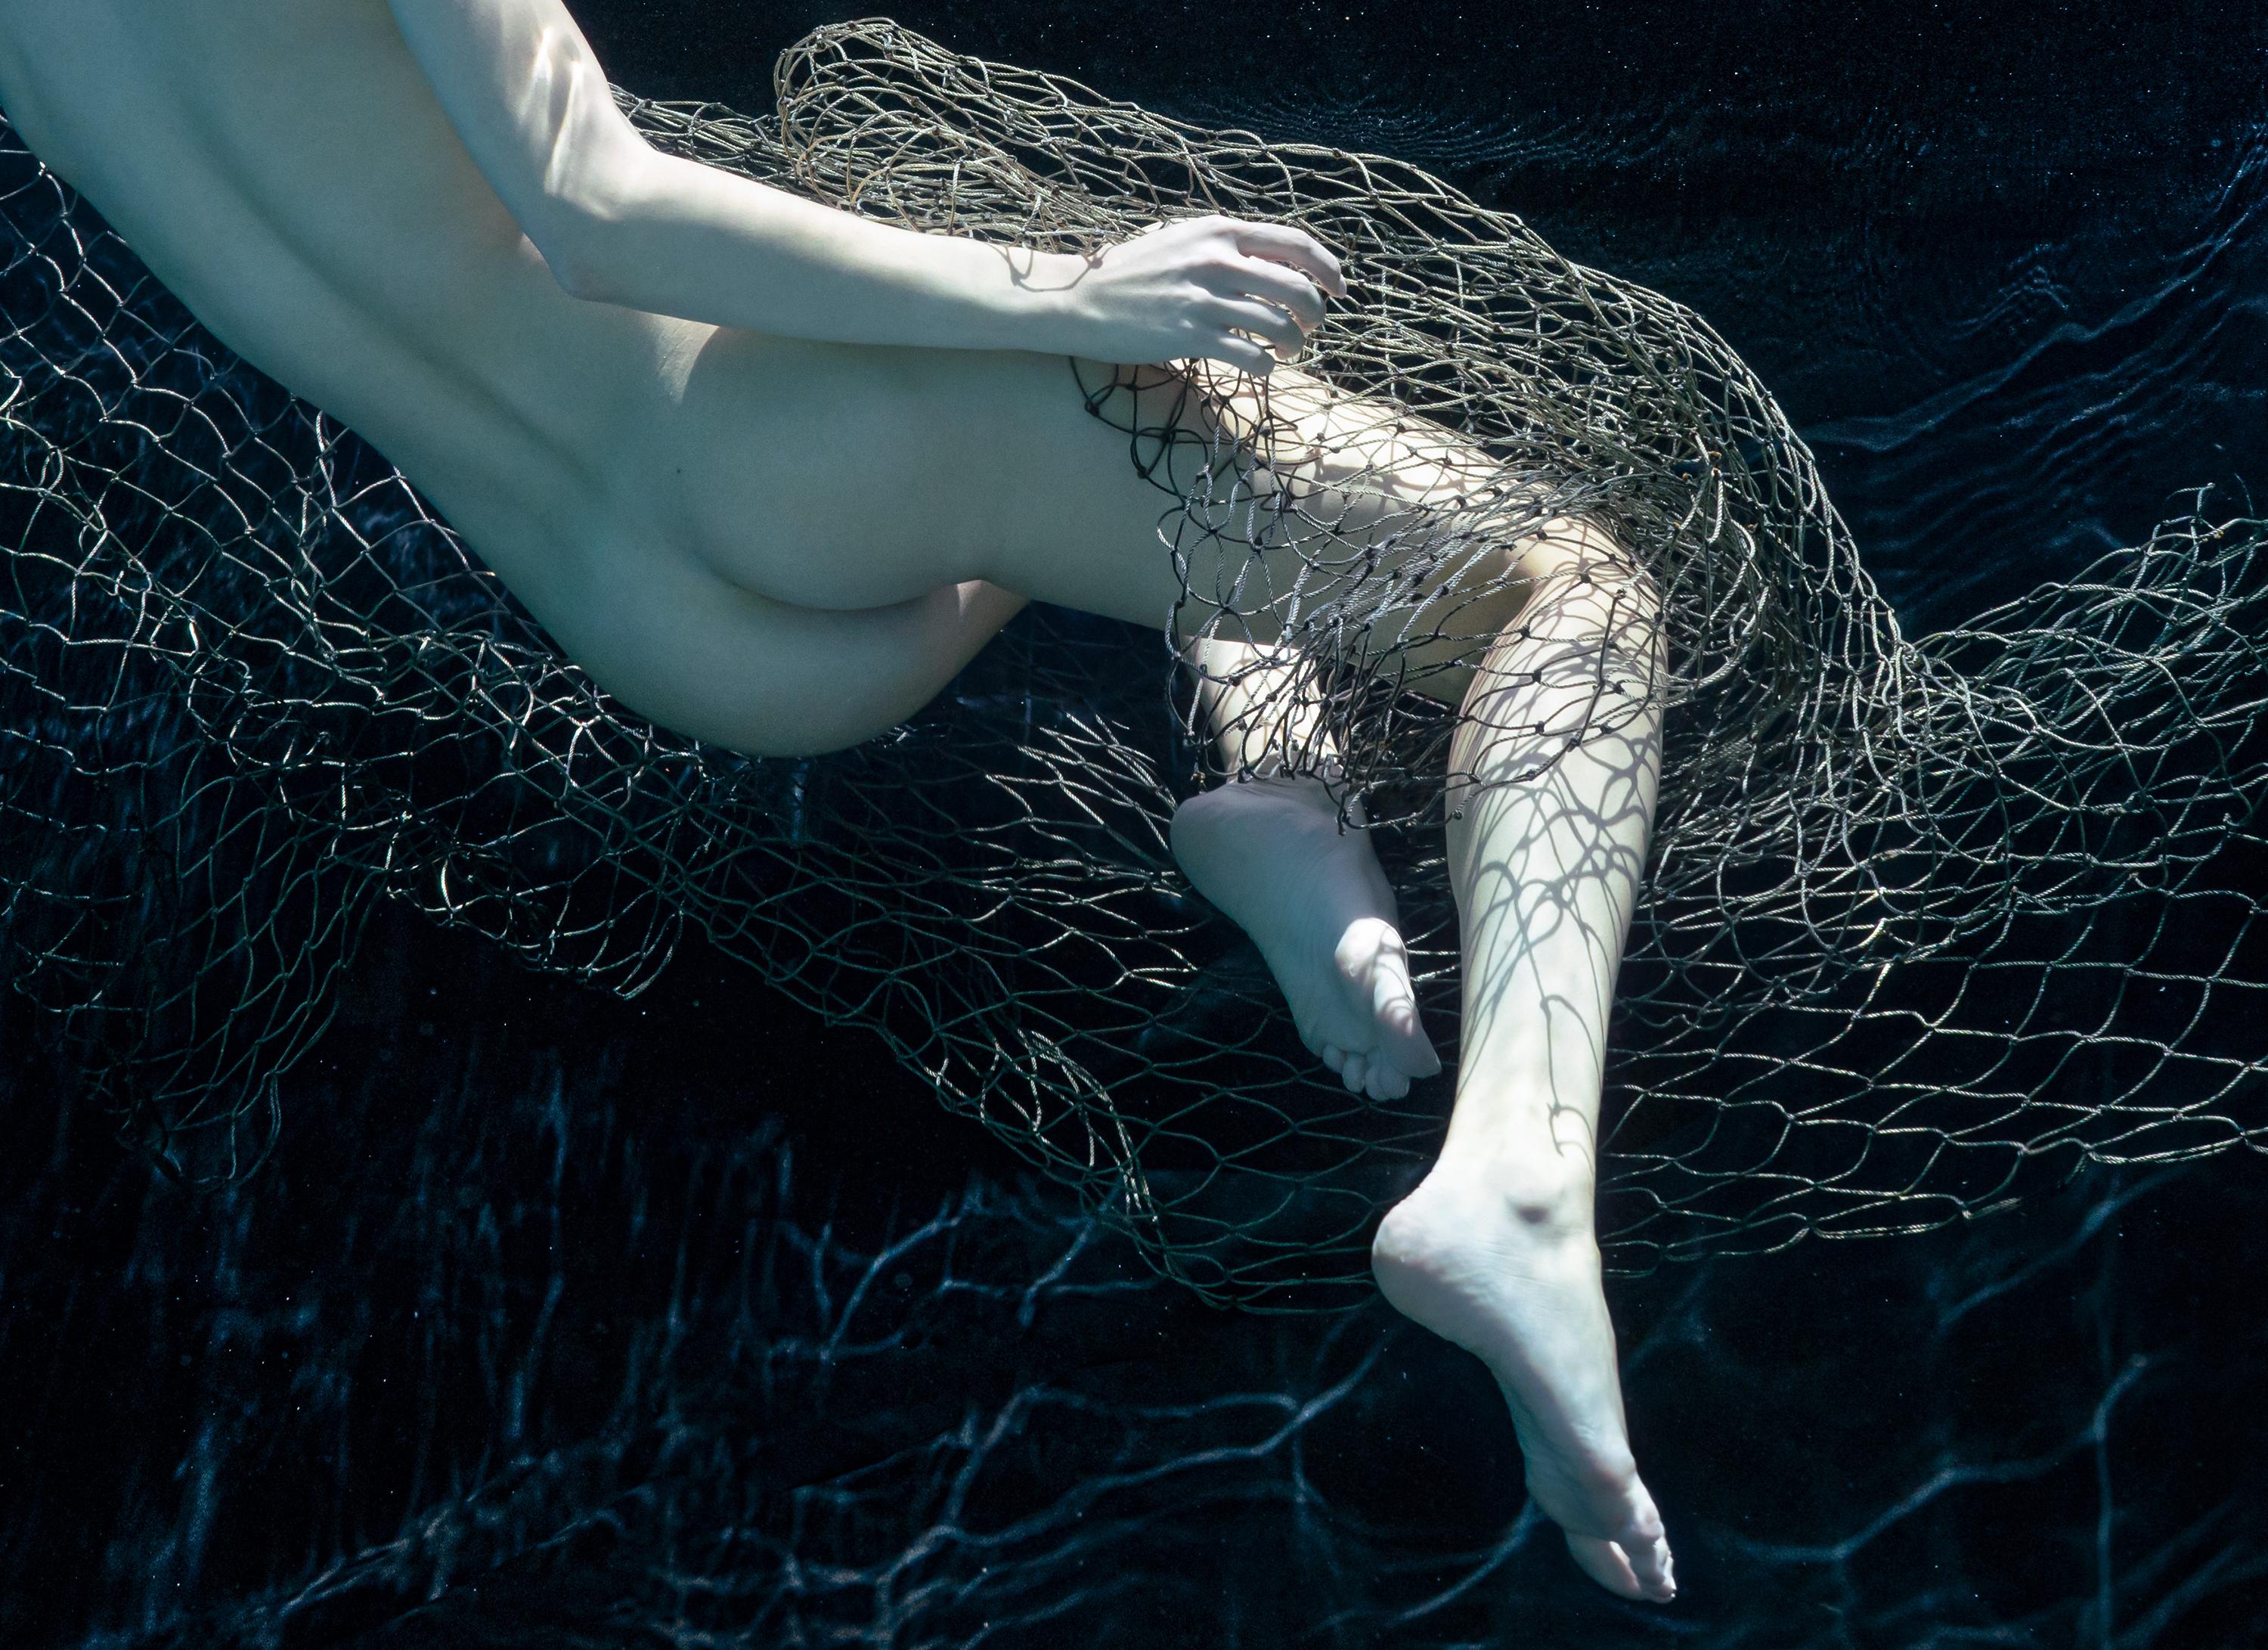 Eine fast monochrome Unterwasseraufnahme einer nackten jungen Frau, die in ein Fischernetz gehüllt ist.

Vom Künstler signierter digitaler Archivpigmentdruck im Original.
Limitierte Auflage von 24 Stück. 
Papierformat: 36